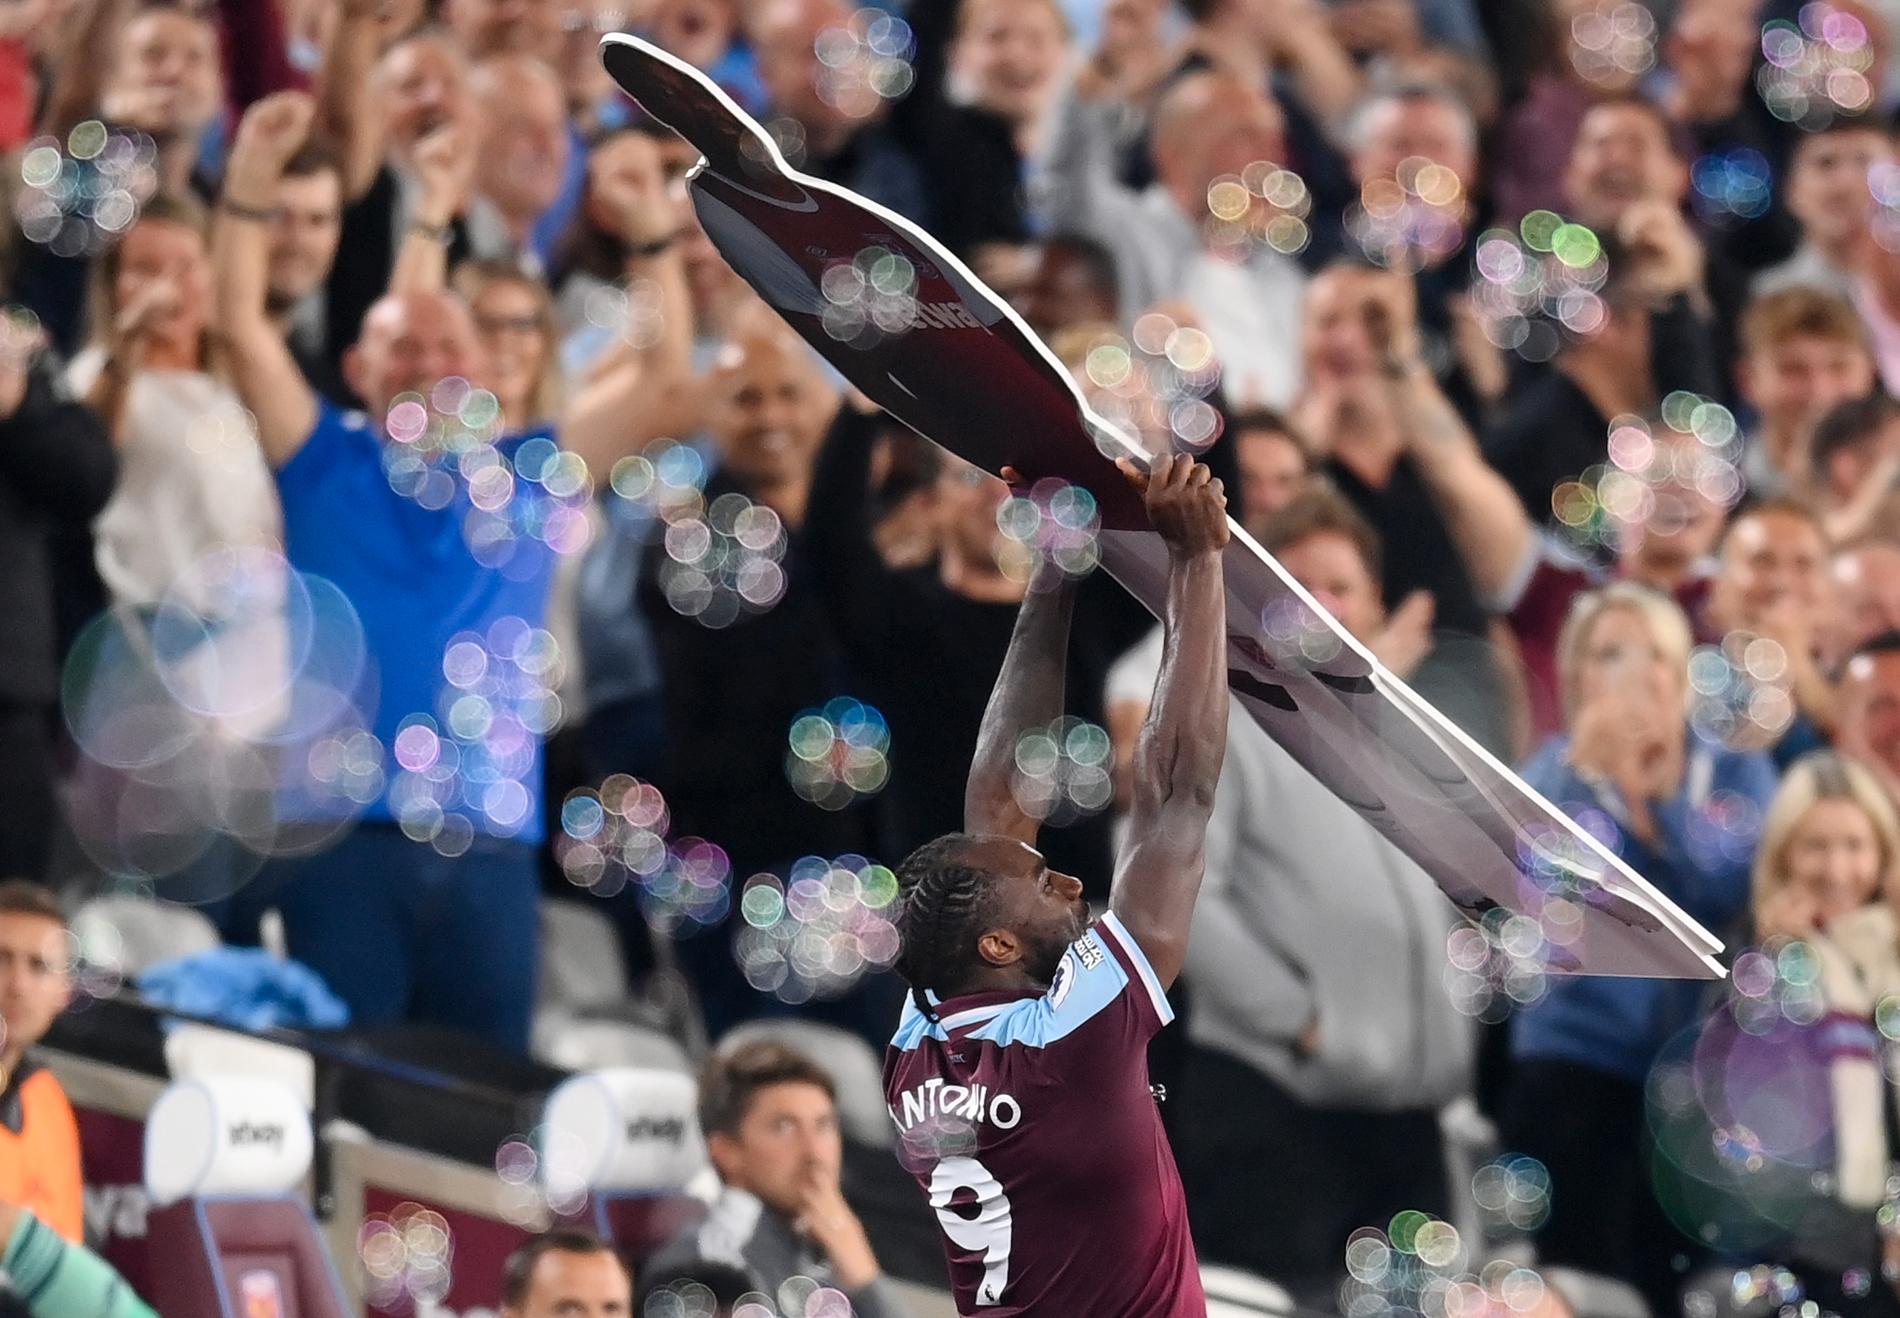 Antonio firar efter sitt rekordmål för West Ham United.